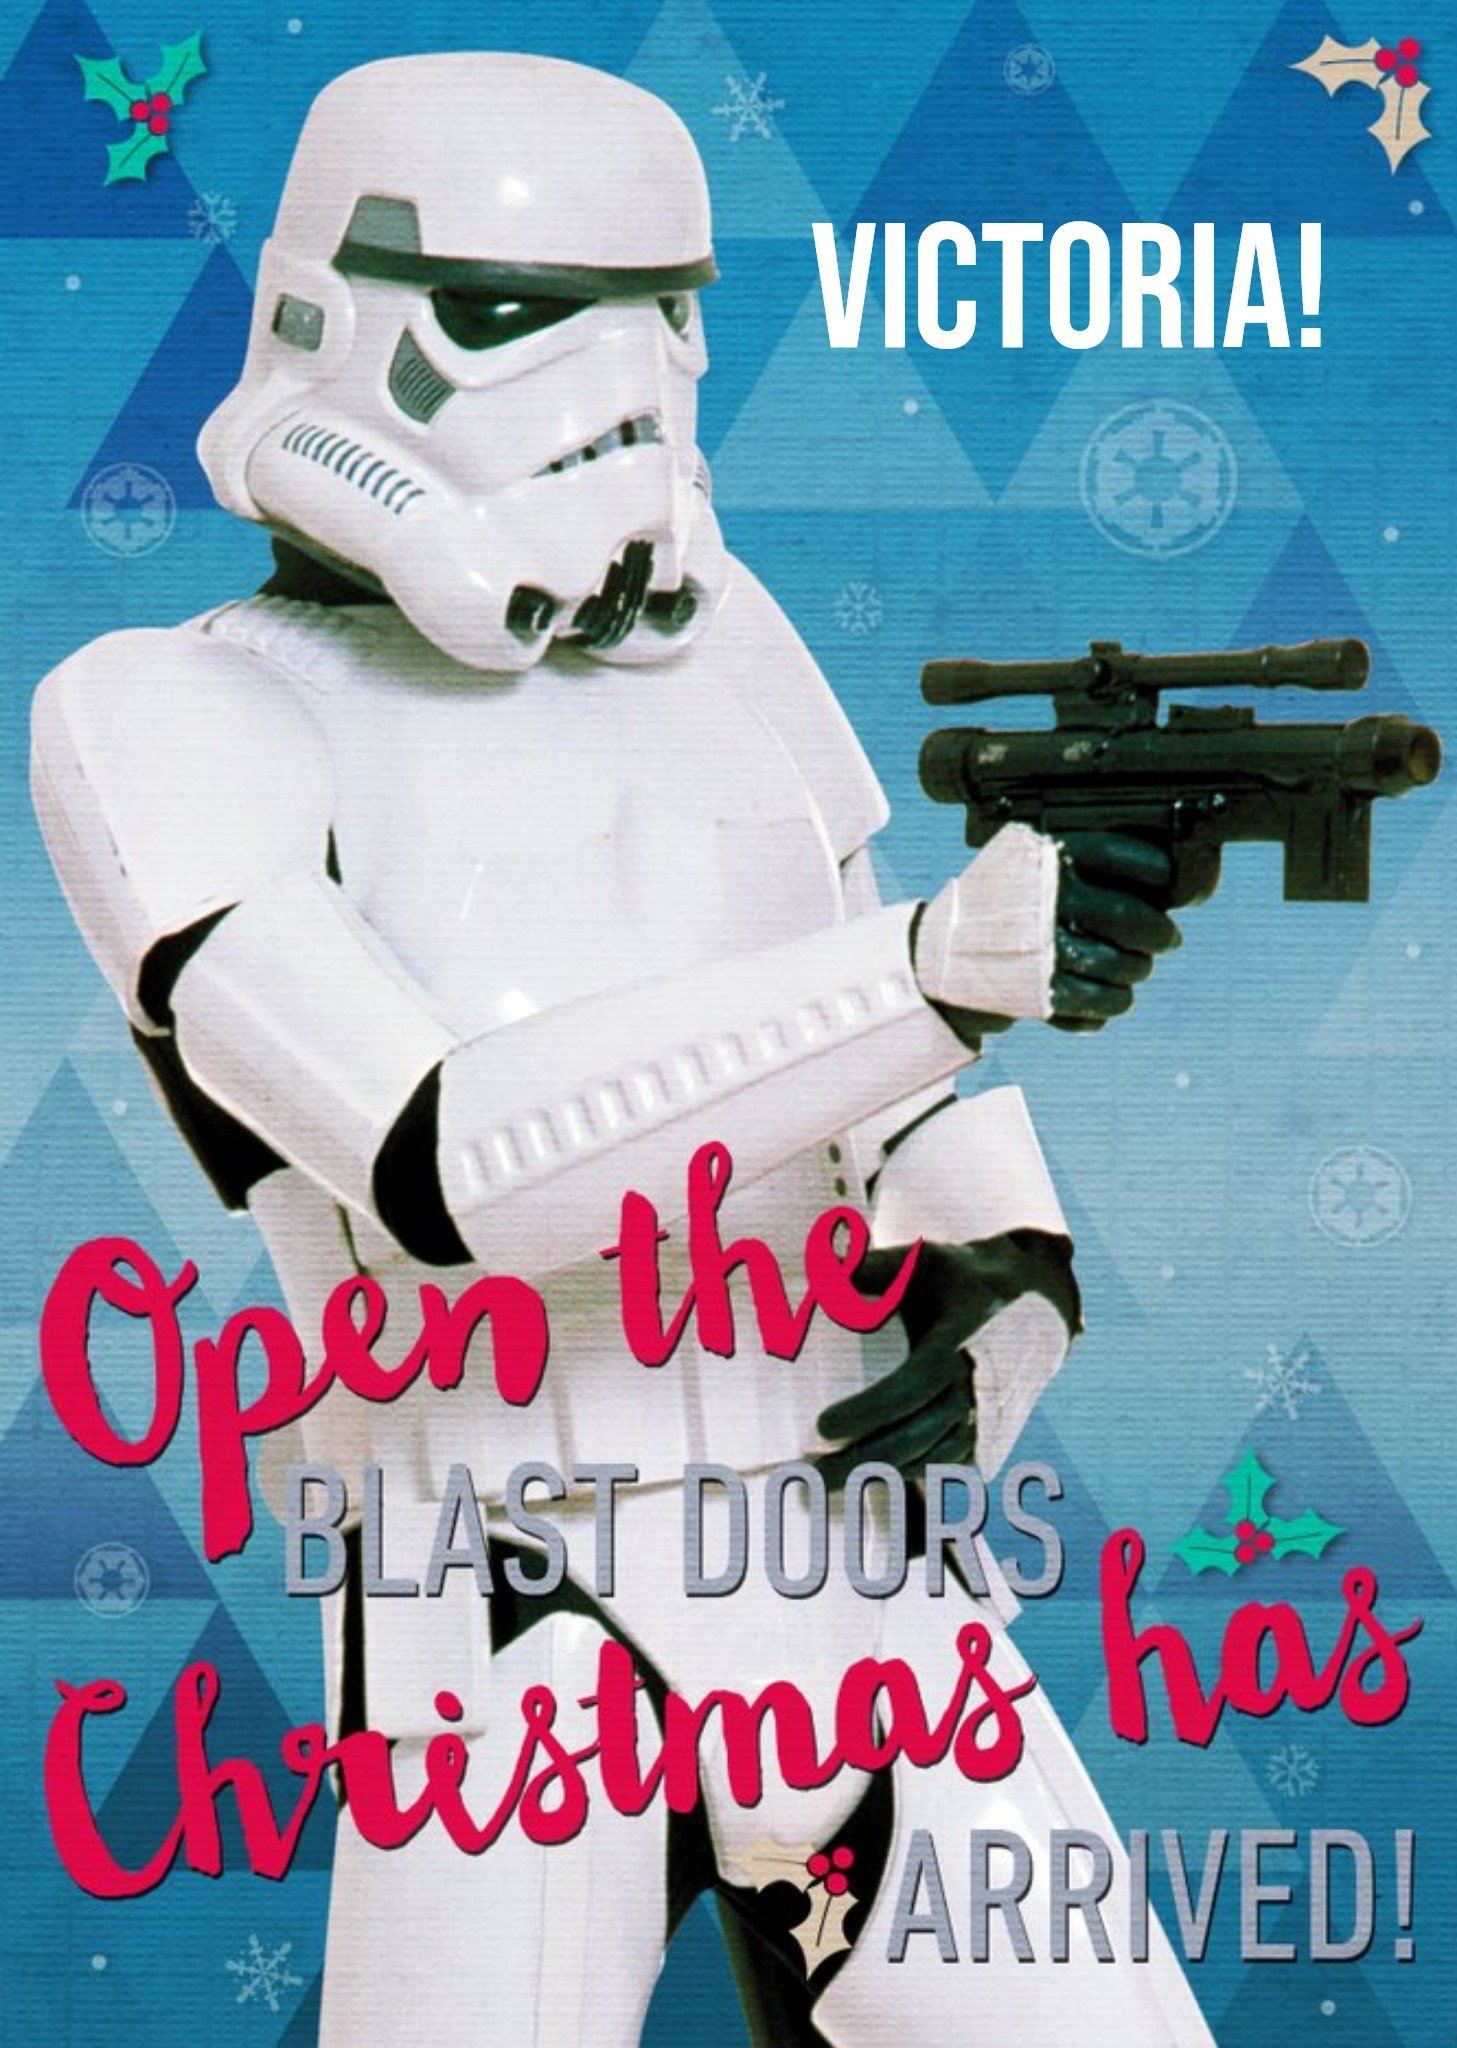 Disney Star Wars Stormtrooper Personalised Christmas Card Ecard